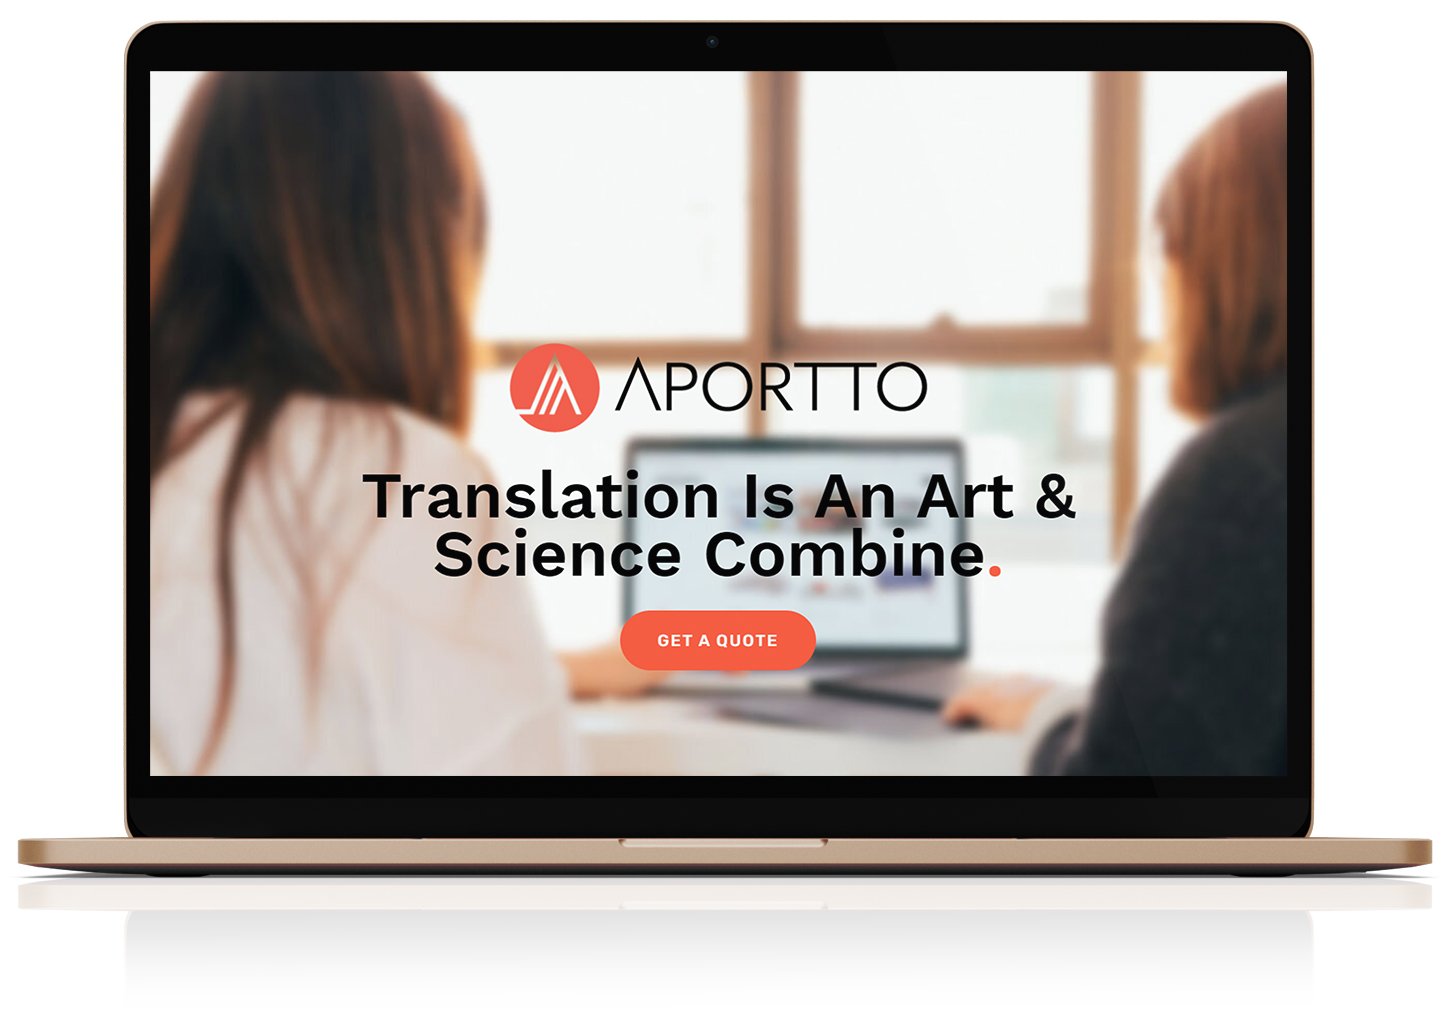 Aportto-Laptop.jpg